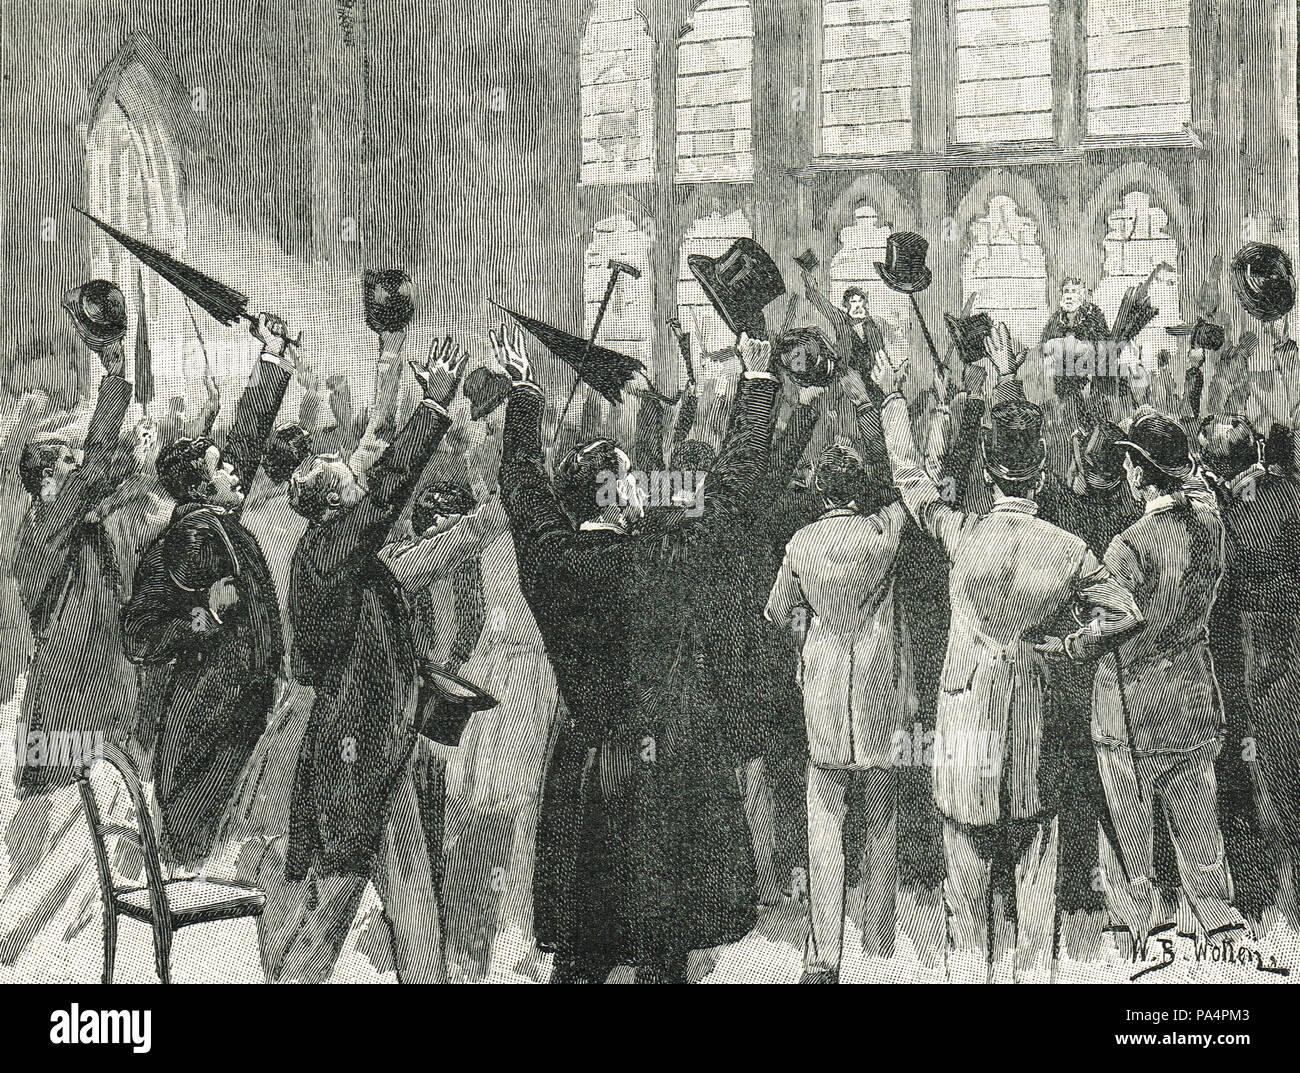 Sitzung des Jingoes in Guildhall, London, England, 1878. Krieg Zeloten, die Unterstützung für die Politik der Disraeli. Britische Vorbereitungen für Krieg, wie die Russen marschierten auf Konstantinopel Stockfoto